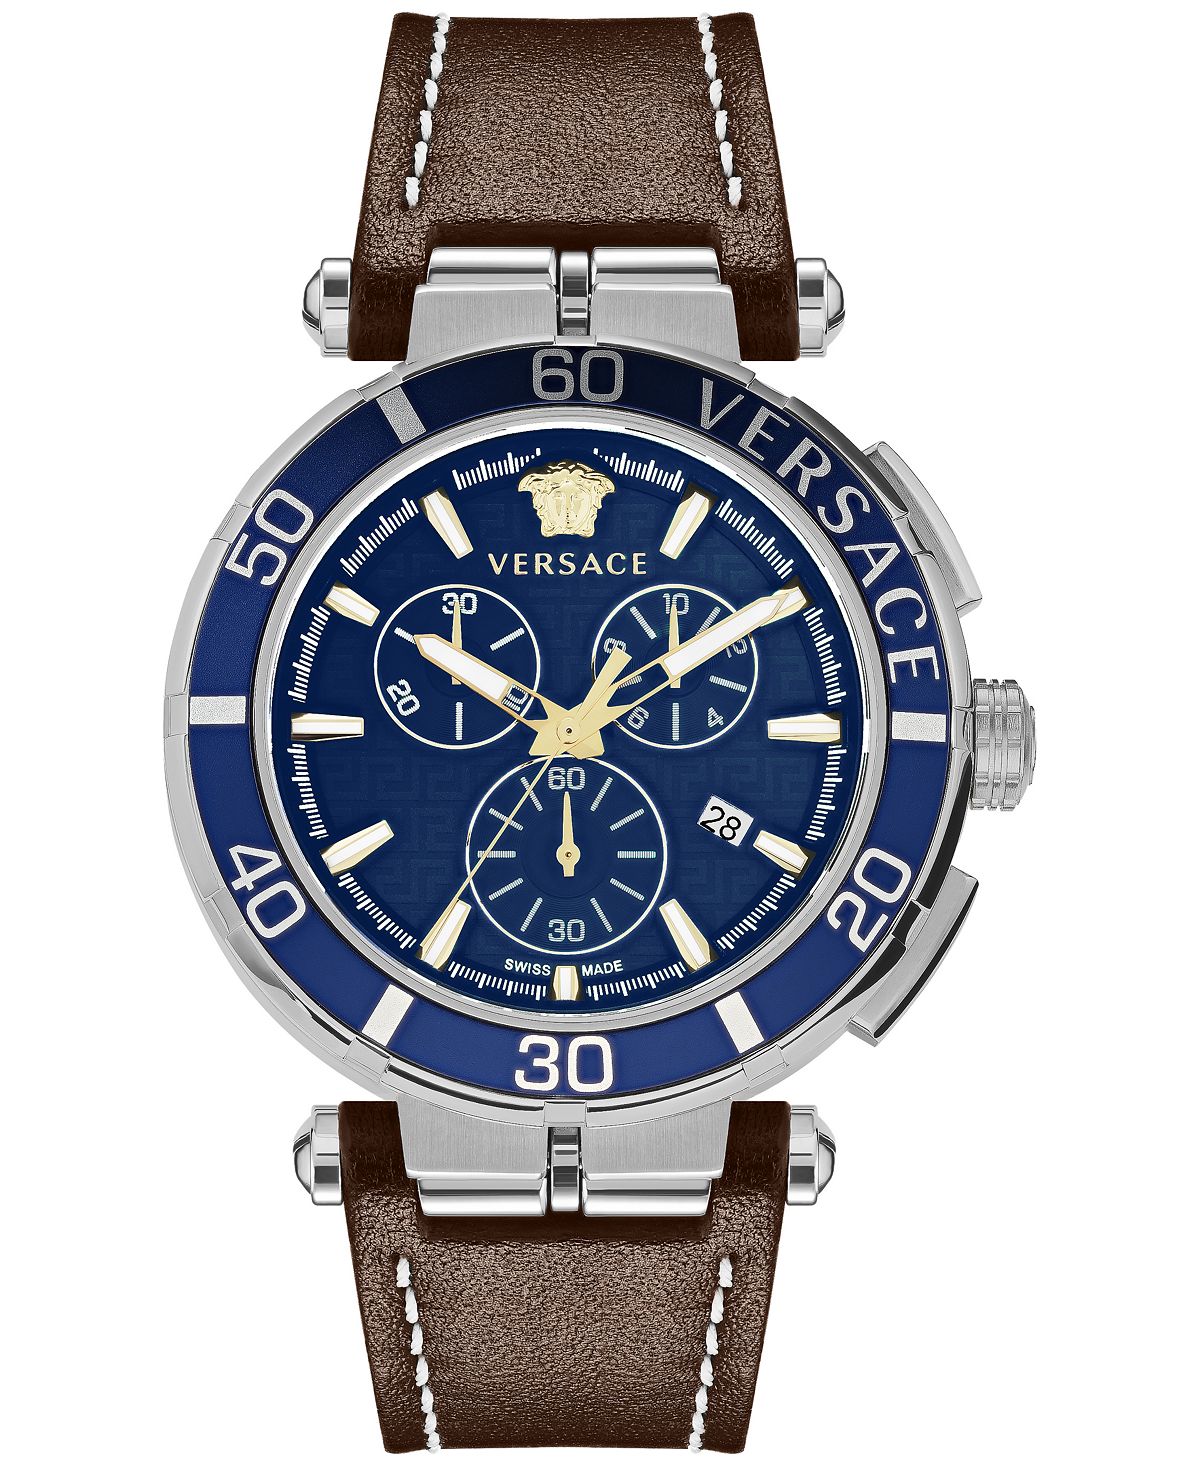 Мужские швейцарские часы с хронографом Greca, коричневый кожаный ремешок, 45 мм Versace фото